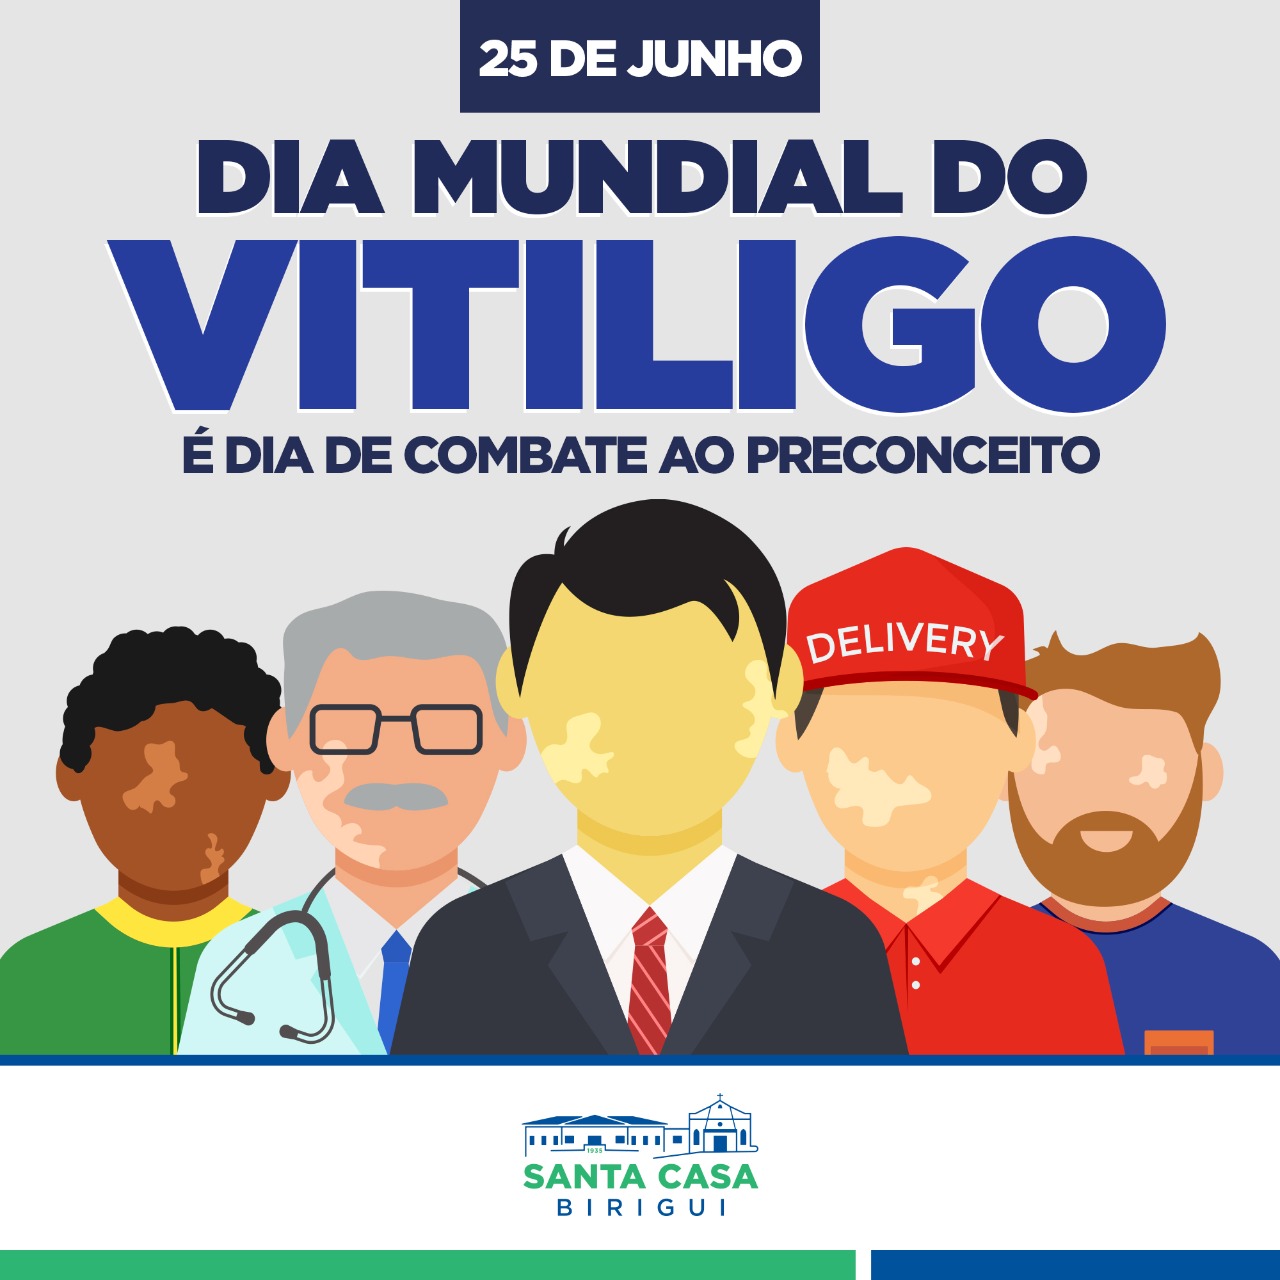 25 de junho – Dia Mundia do Vitiligo